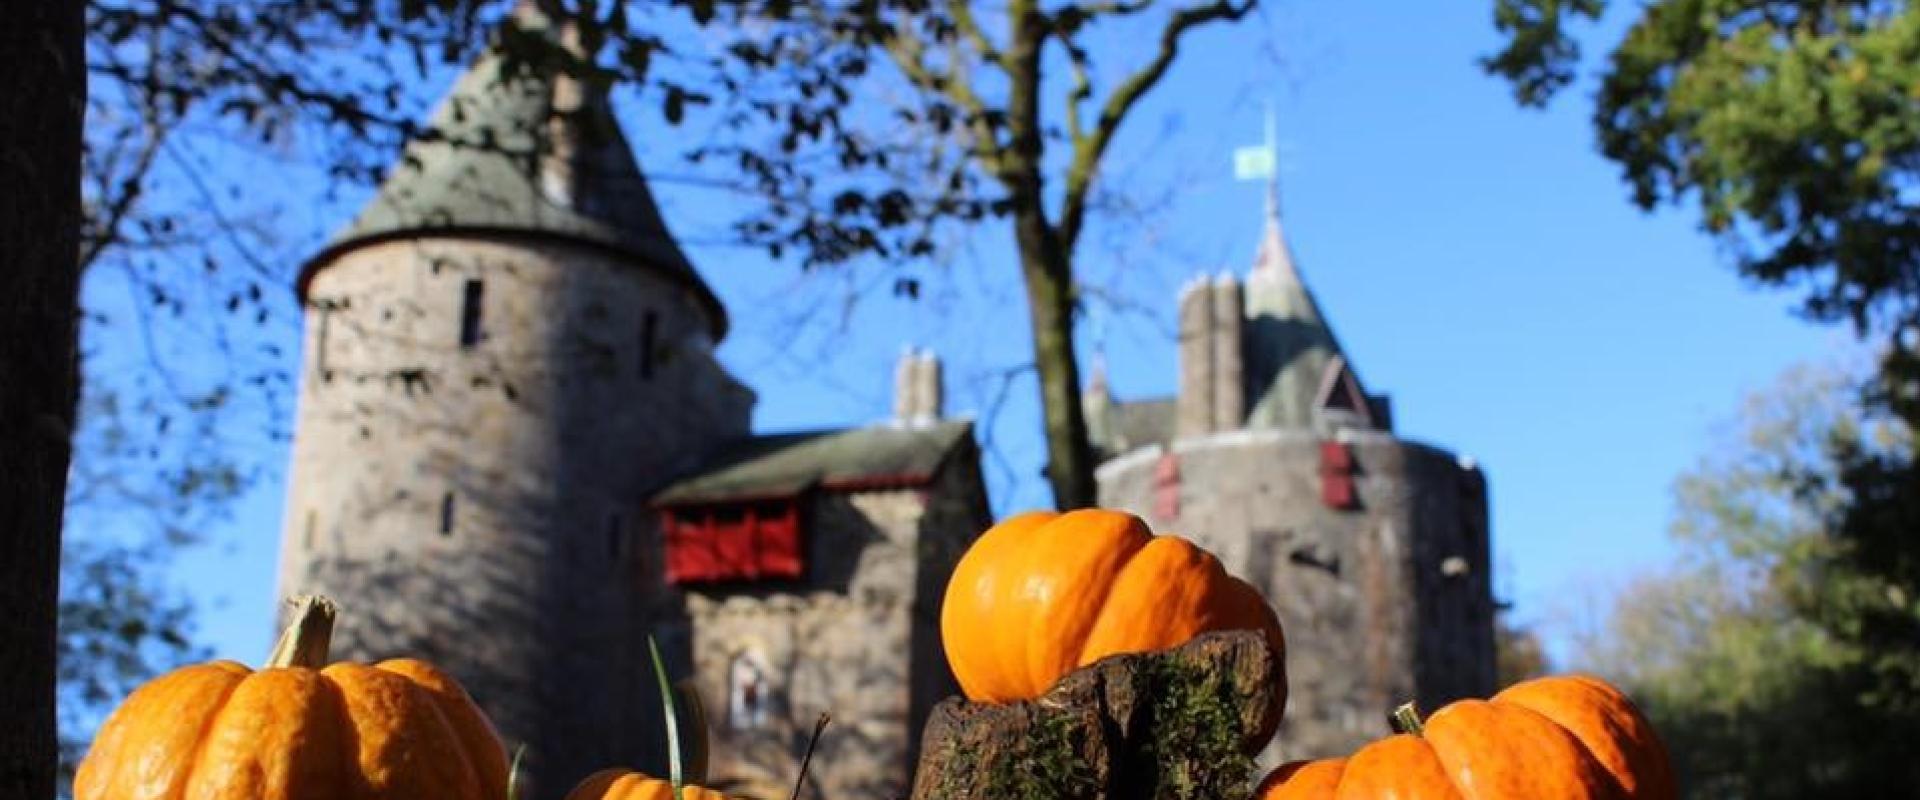 golygfa tuag at y castell, gyda phwmpenni yn y blaendir / view towards the castle, with pumpkins in the foreground